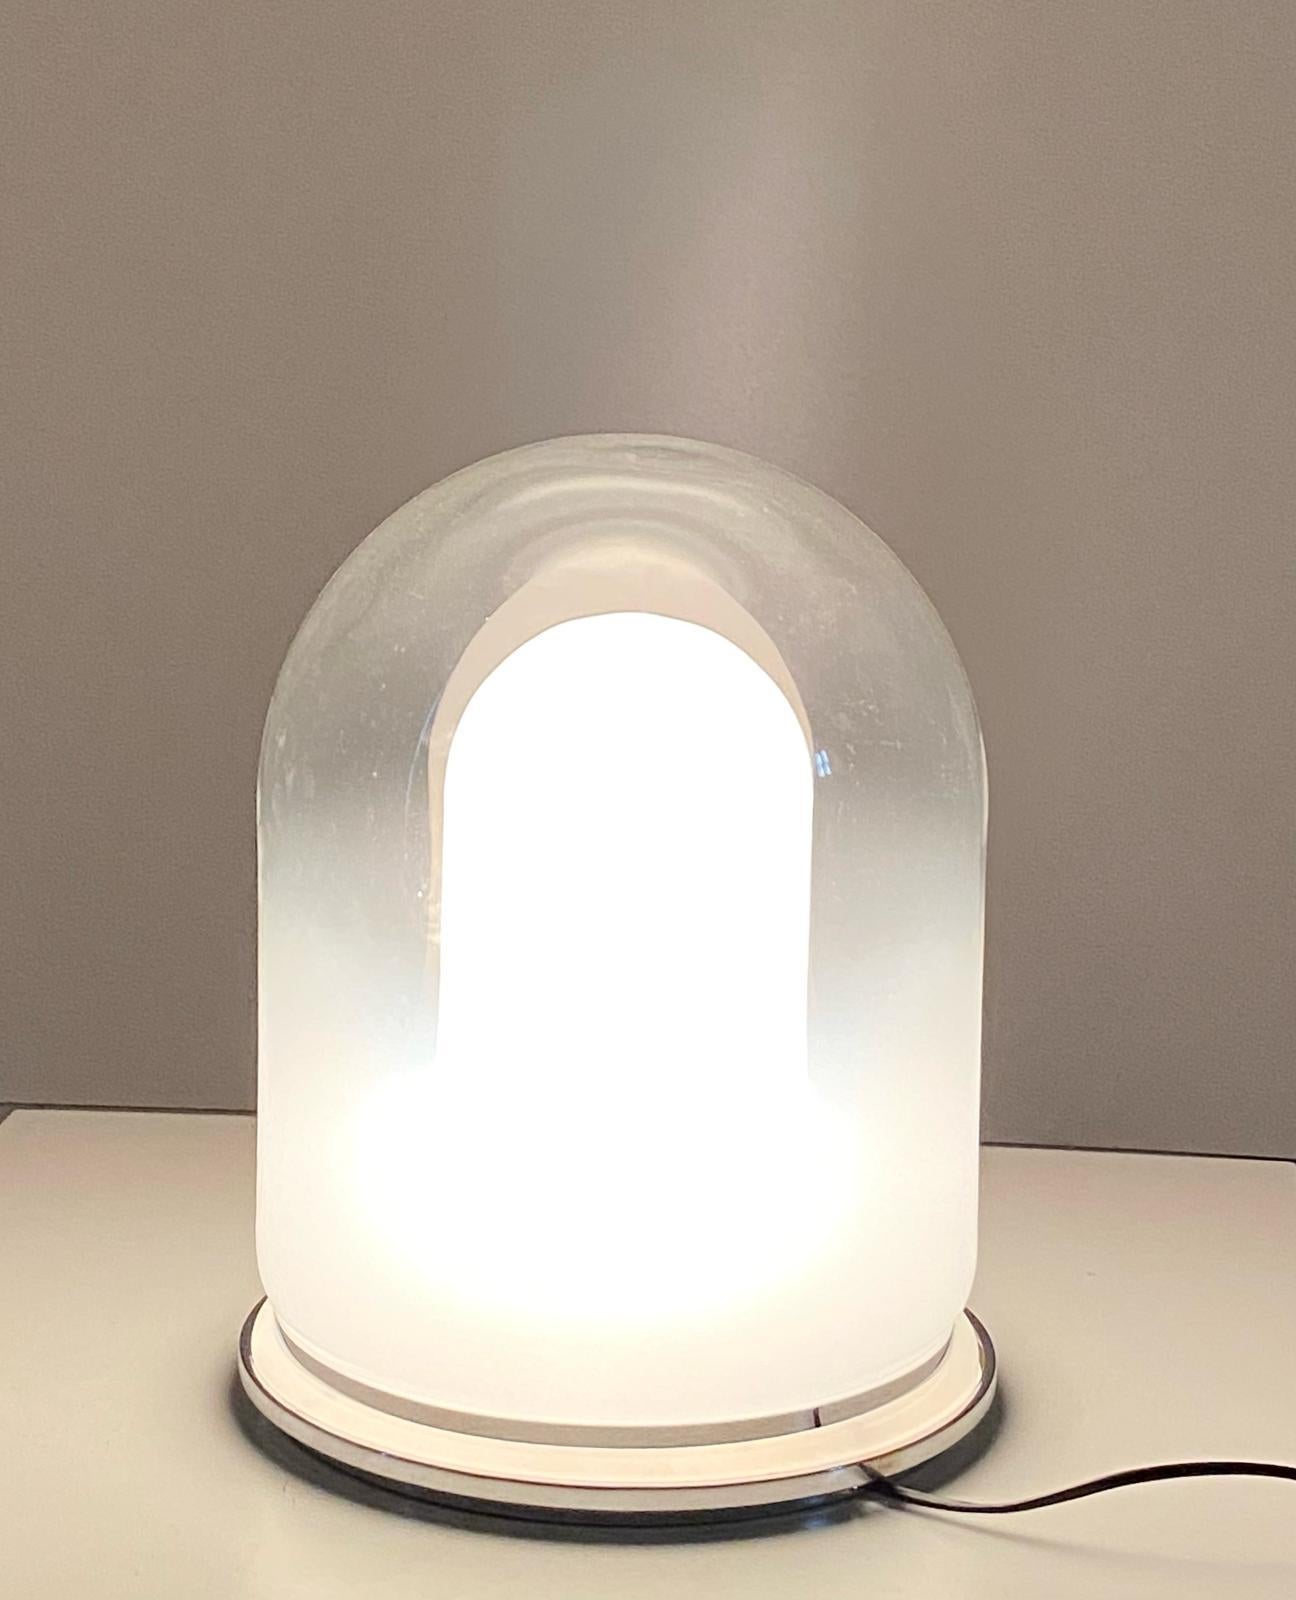 Rara lampada in vetro di Murano degli anni 60 attribuita a Carlo Nason. Base in acciaio cromato e lampada in vetro di Murano. Paralume in vetro doppio colore. Revisionata e perfettamente funzionante. Componenti in vetro intatte e piccoli segni del